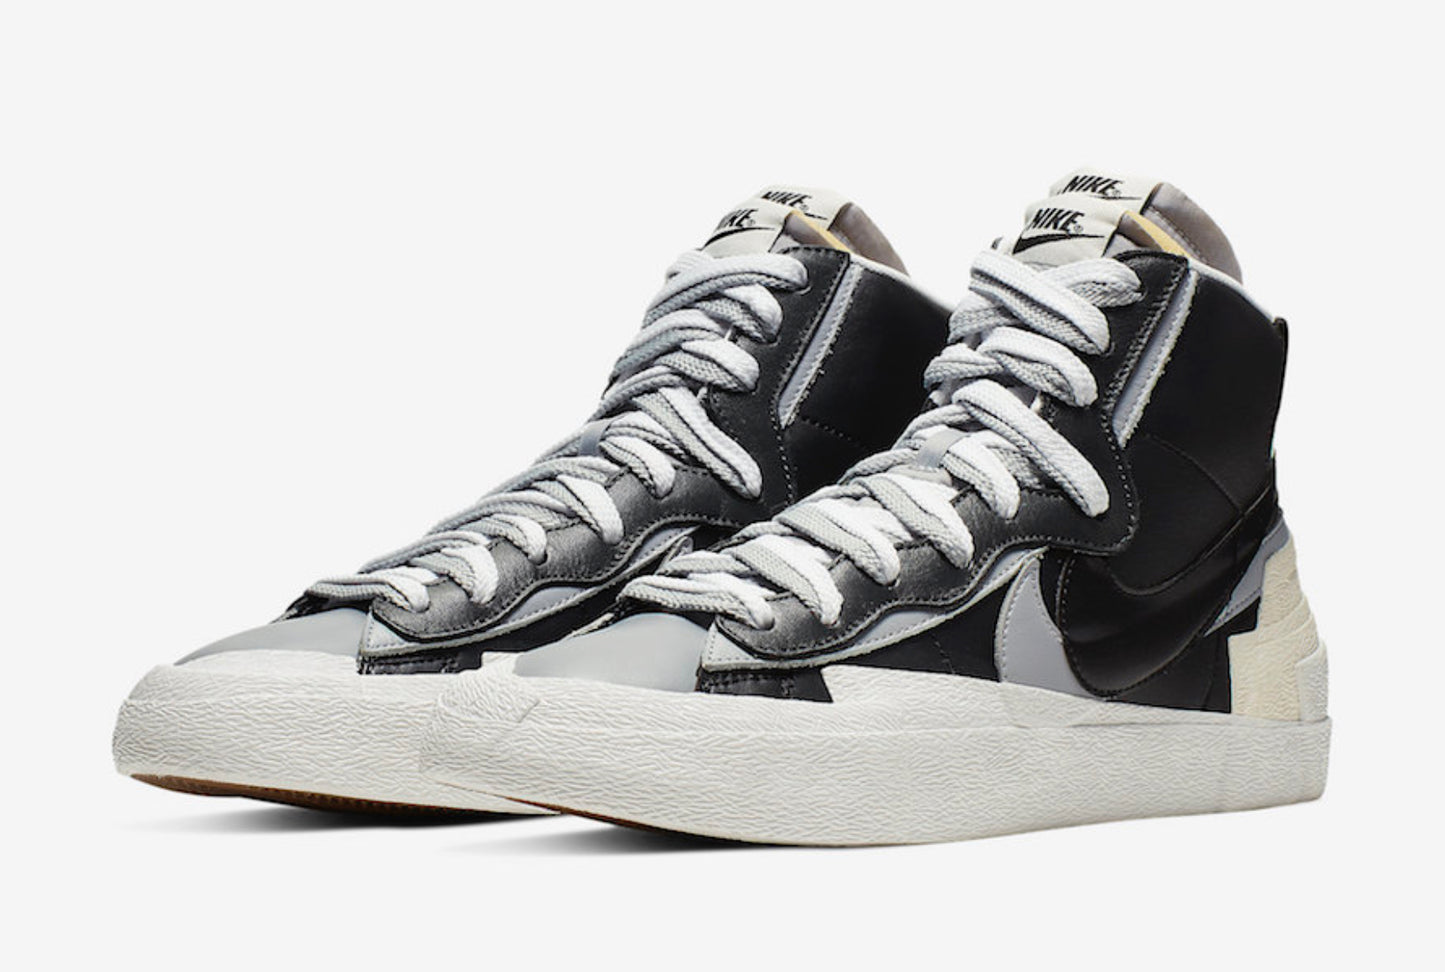 2019 Sacai x Nike Blazer Mid “Black/Grey”